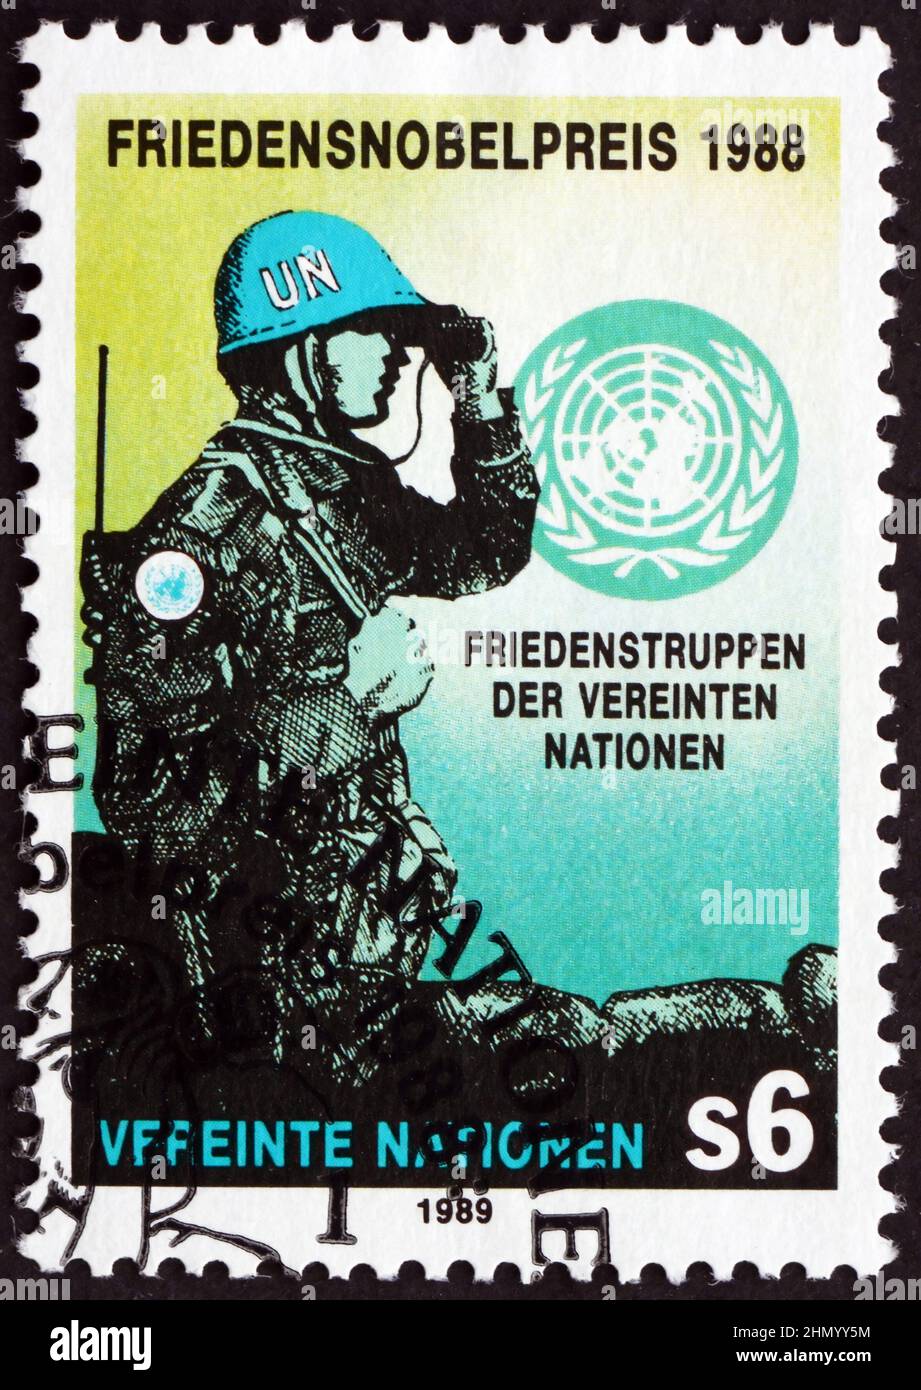 VEREINTE NATIONEN - UM 1989: Eine in den Vereinten Nationen gedruckte Briefmarke, Büros in Wien, die der UN-Friedenstruppe gewidmet ist, 1988 Friedensnobelpreis Winn Stockfoto